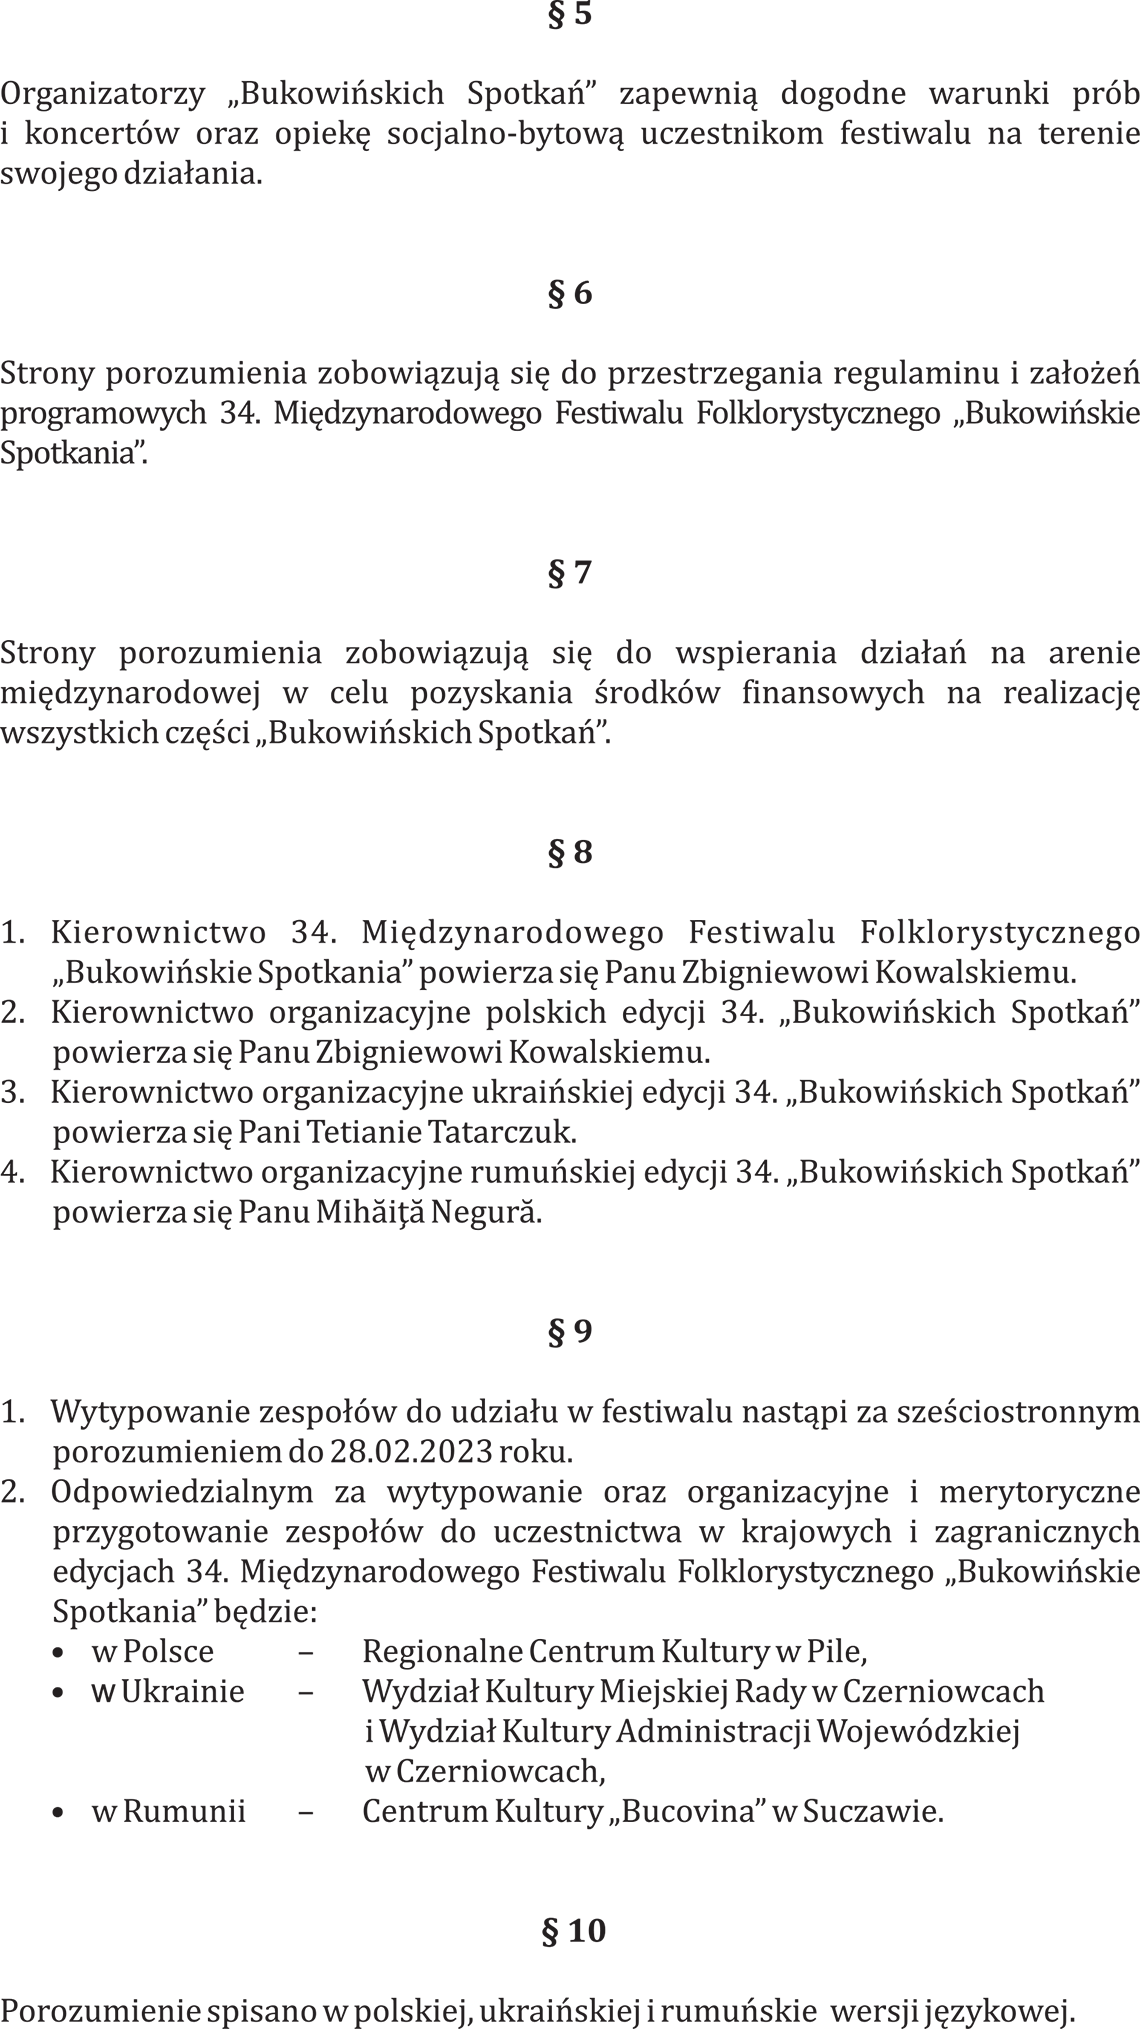 porozumienie 34 pl 06